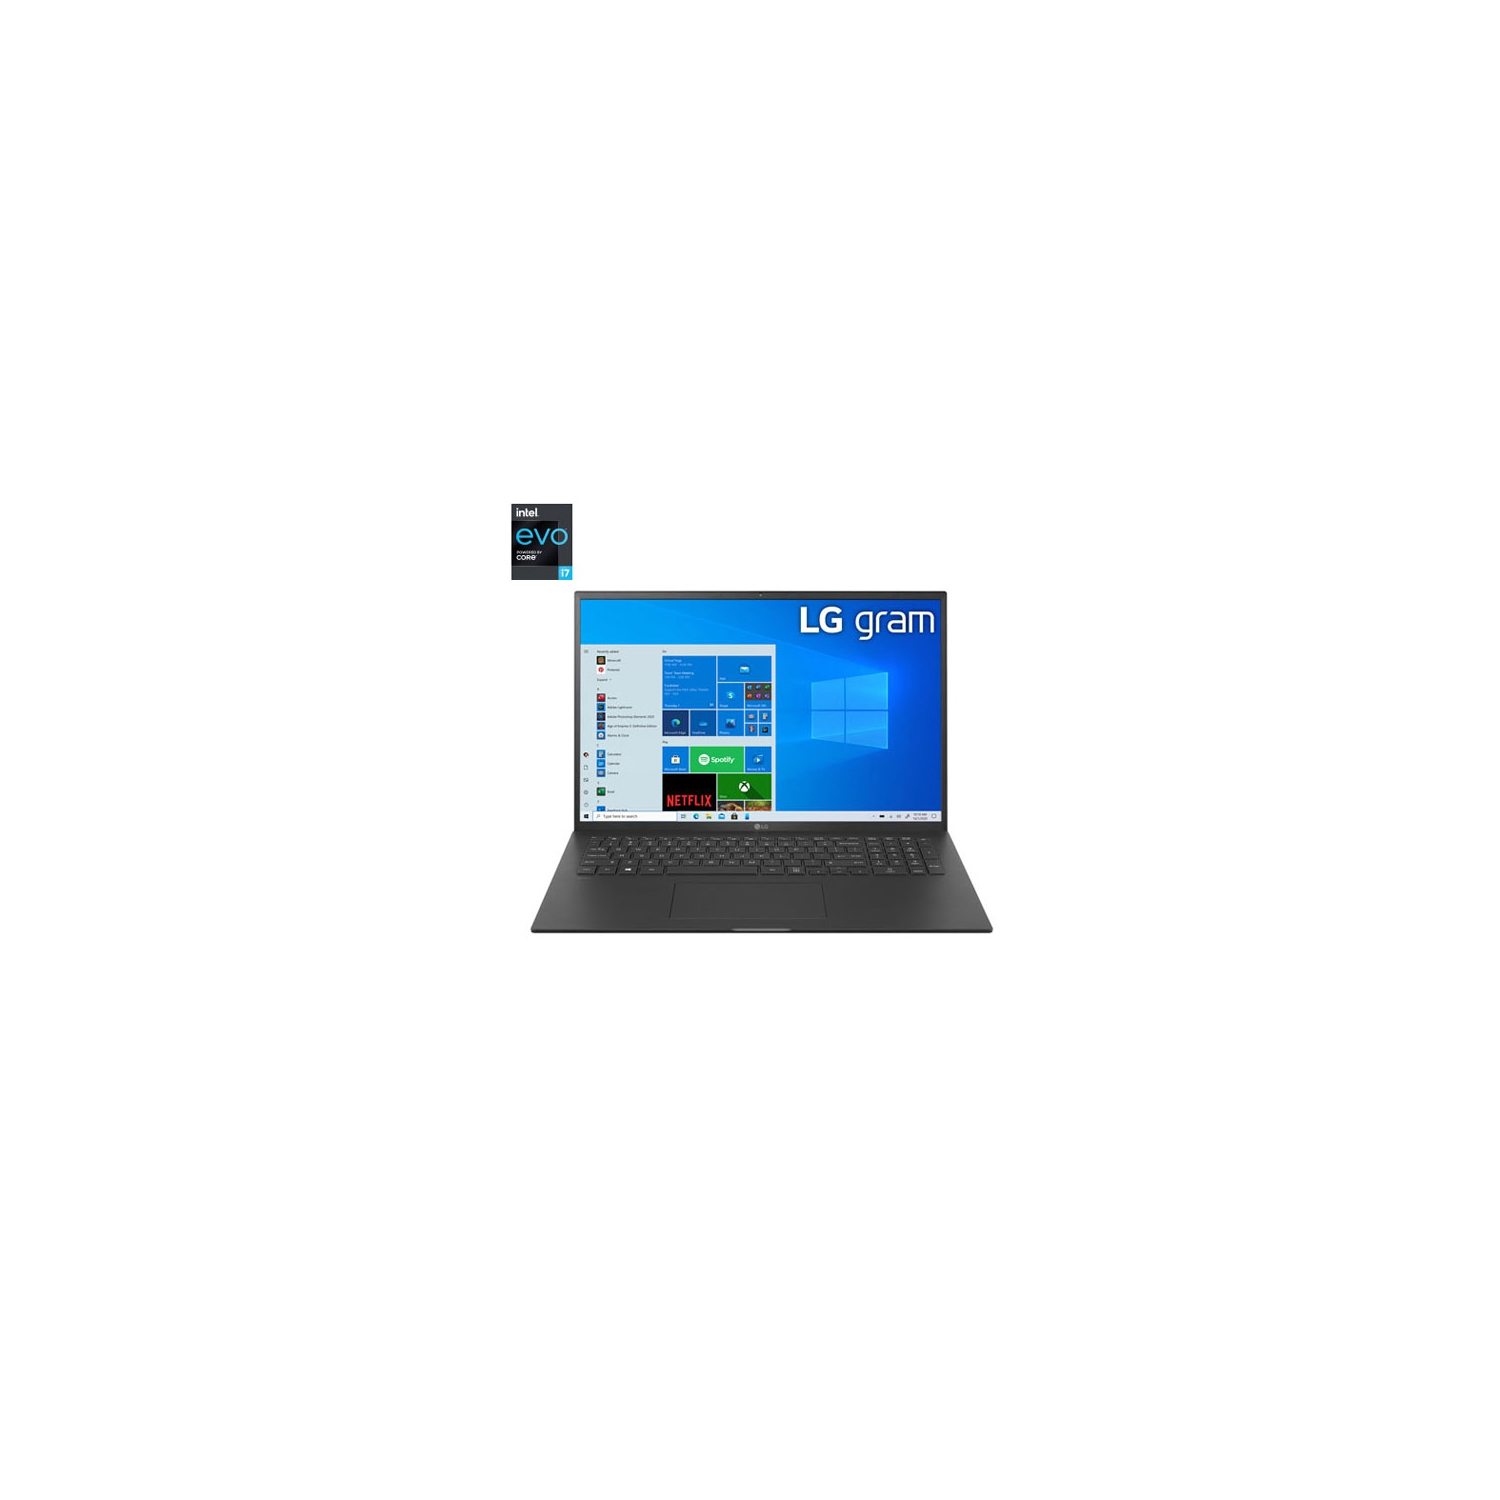 LG Gram 17" Laptop -Obsidian Black (Intel Evo Core i7-1165G7/1TB SSD/16GB RAM) -En - Open Box